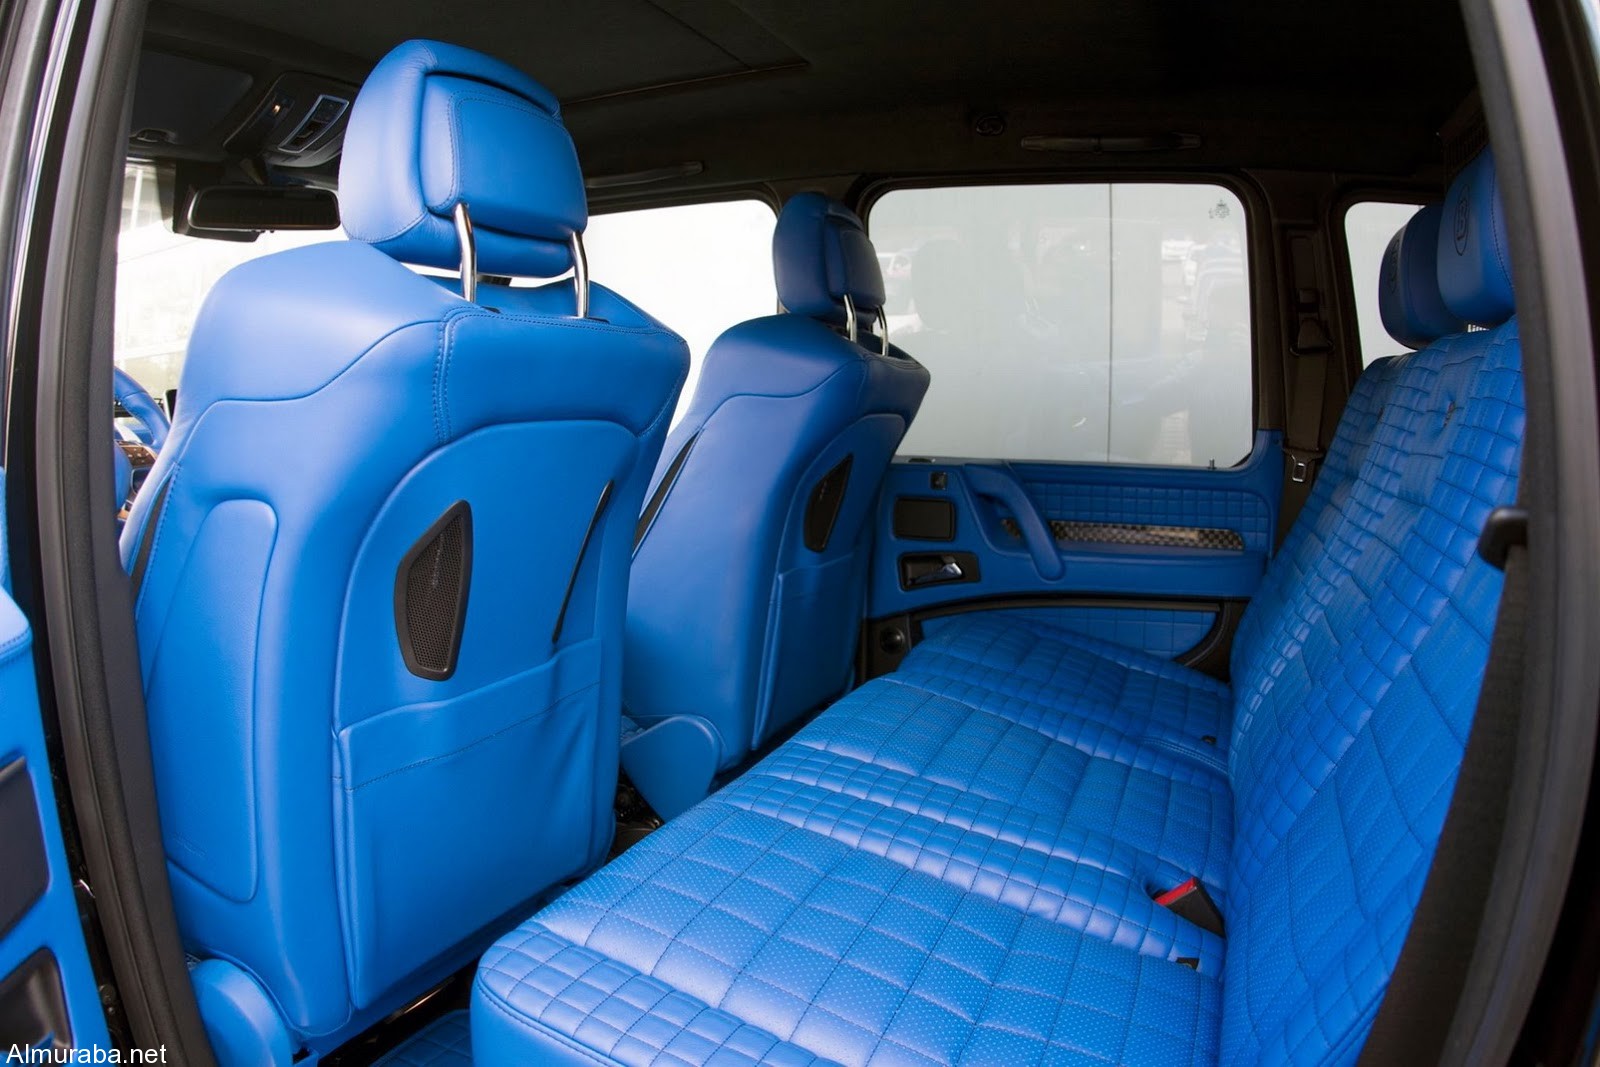 brabus-500-4x4-blue-interior-6